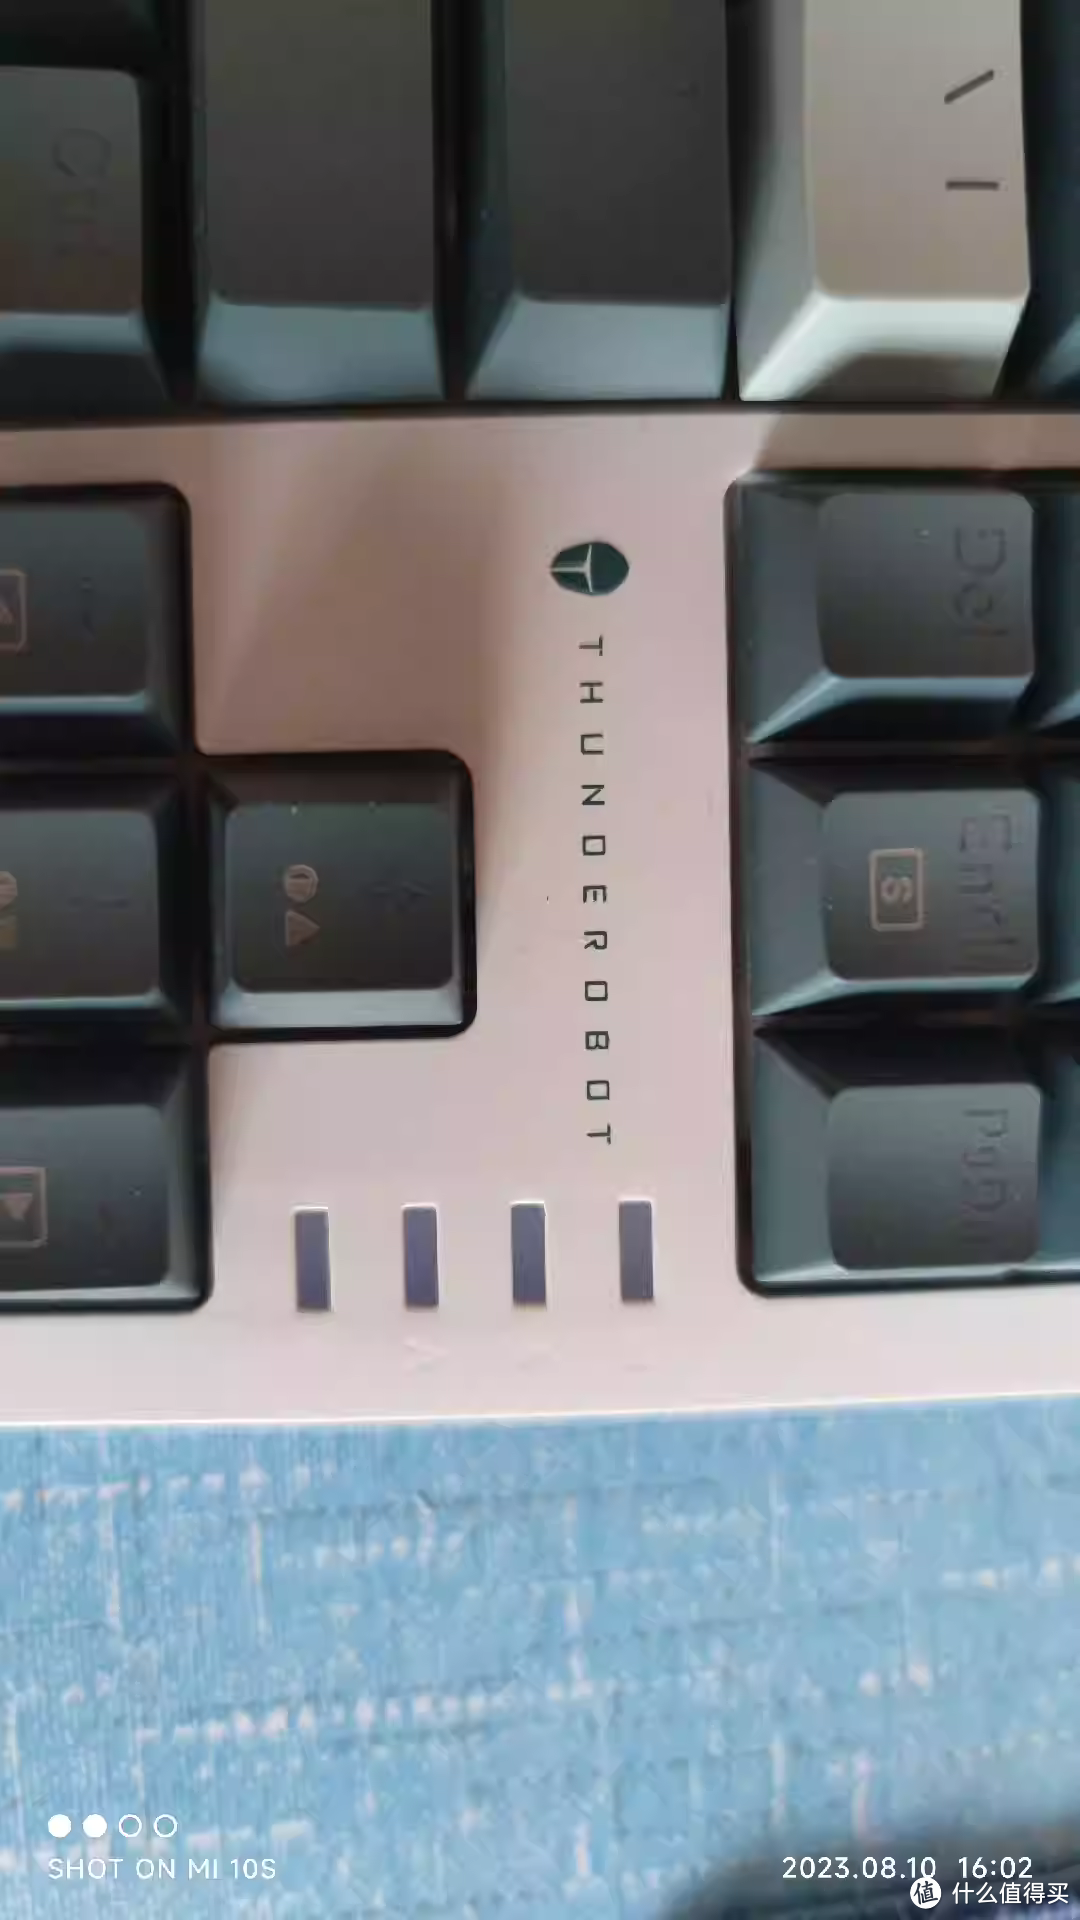 雷神K87机械键盘，这个配色可以，亮点是下边一排灯带，很有特色，同价位比较有个性的了